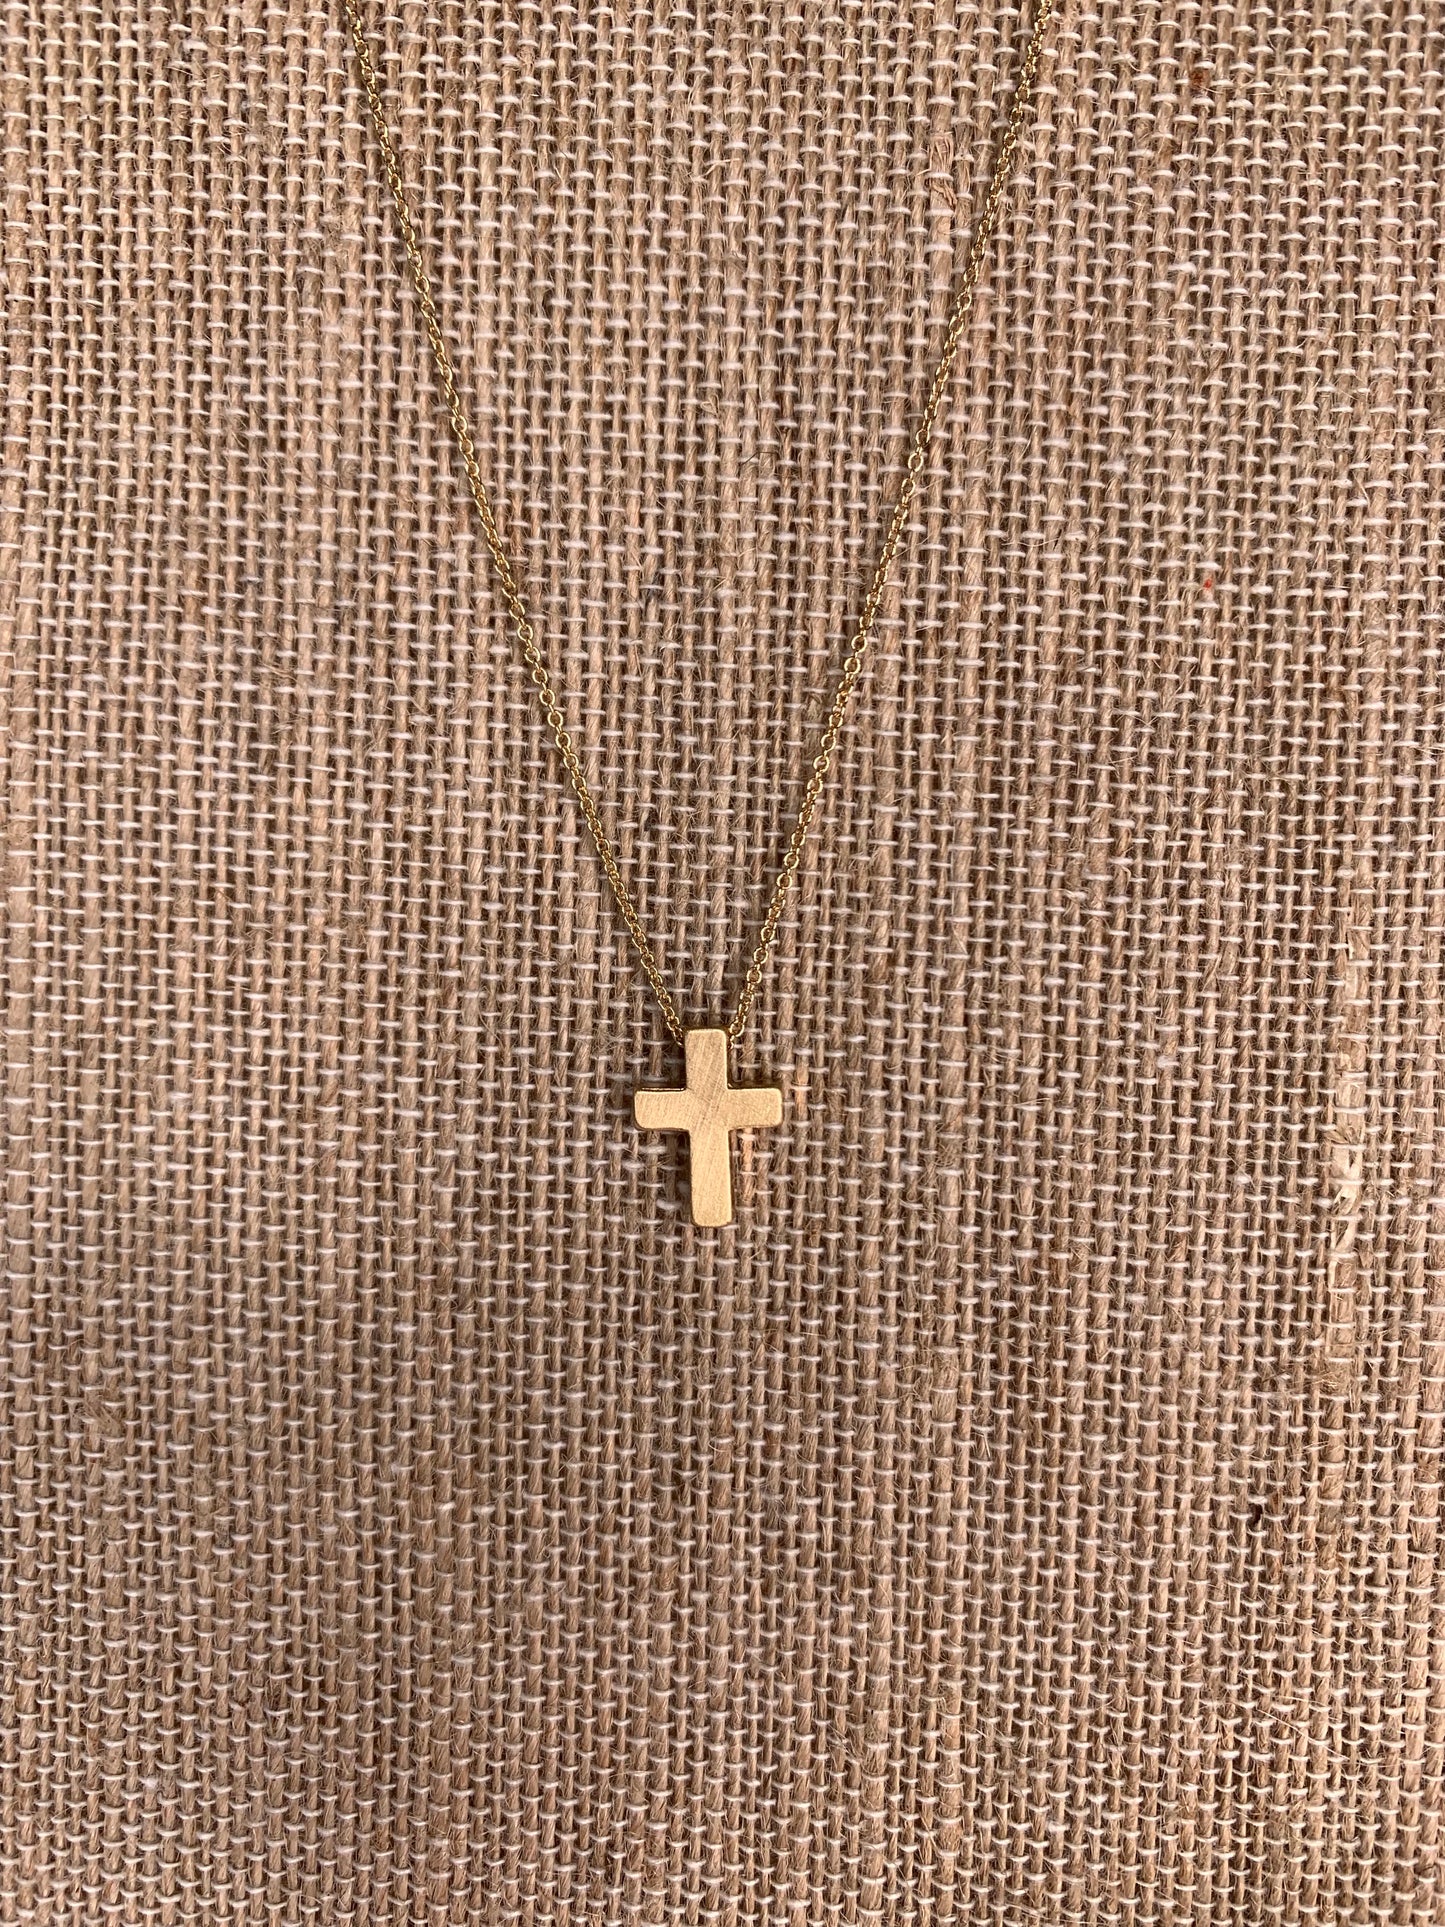 Christy Cross Gold Necklace